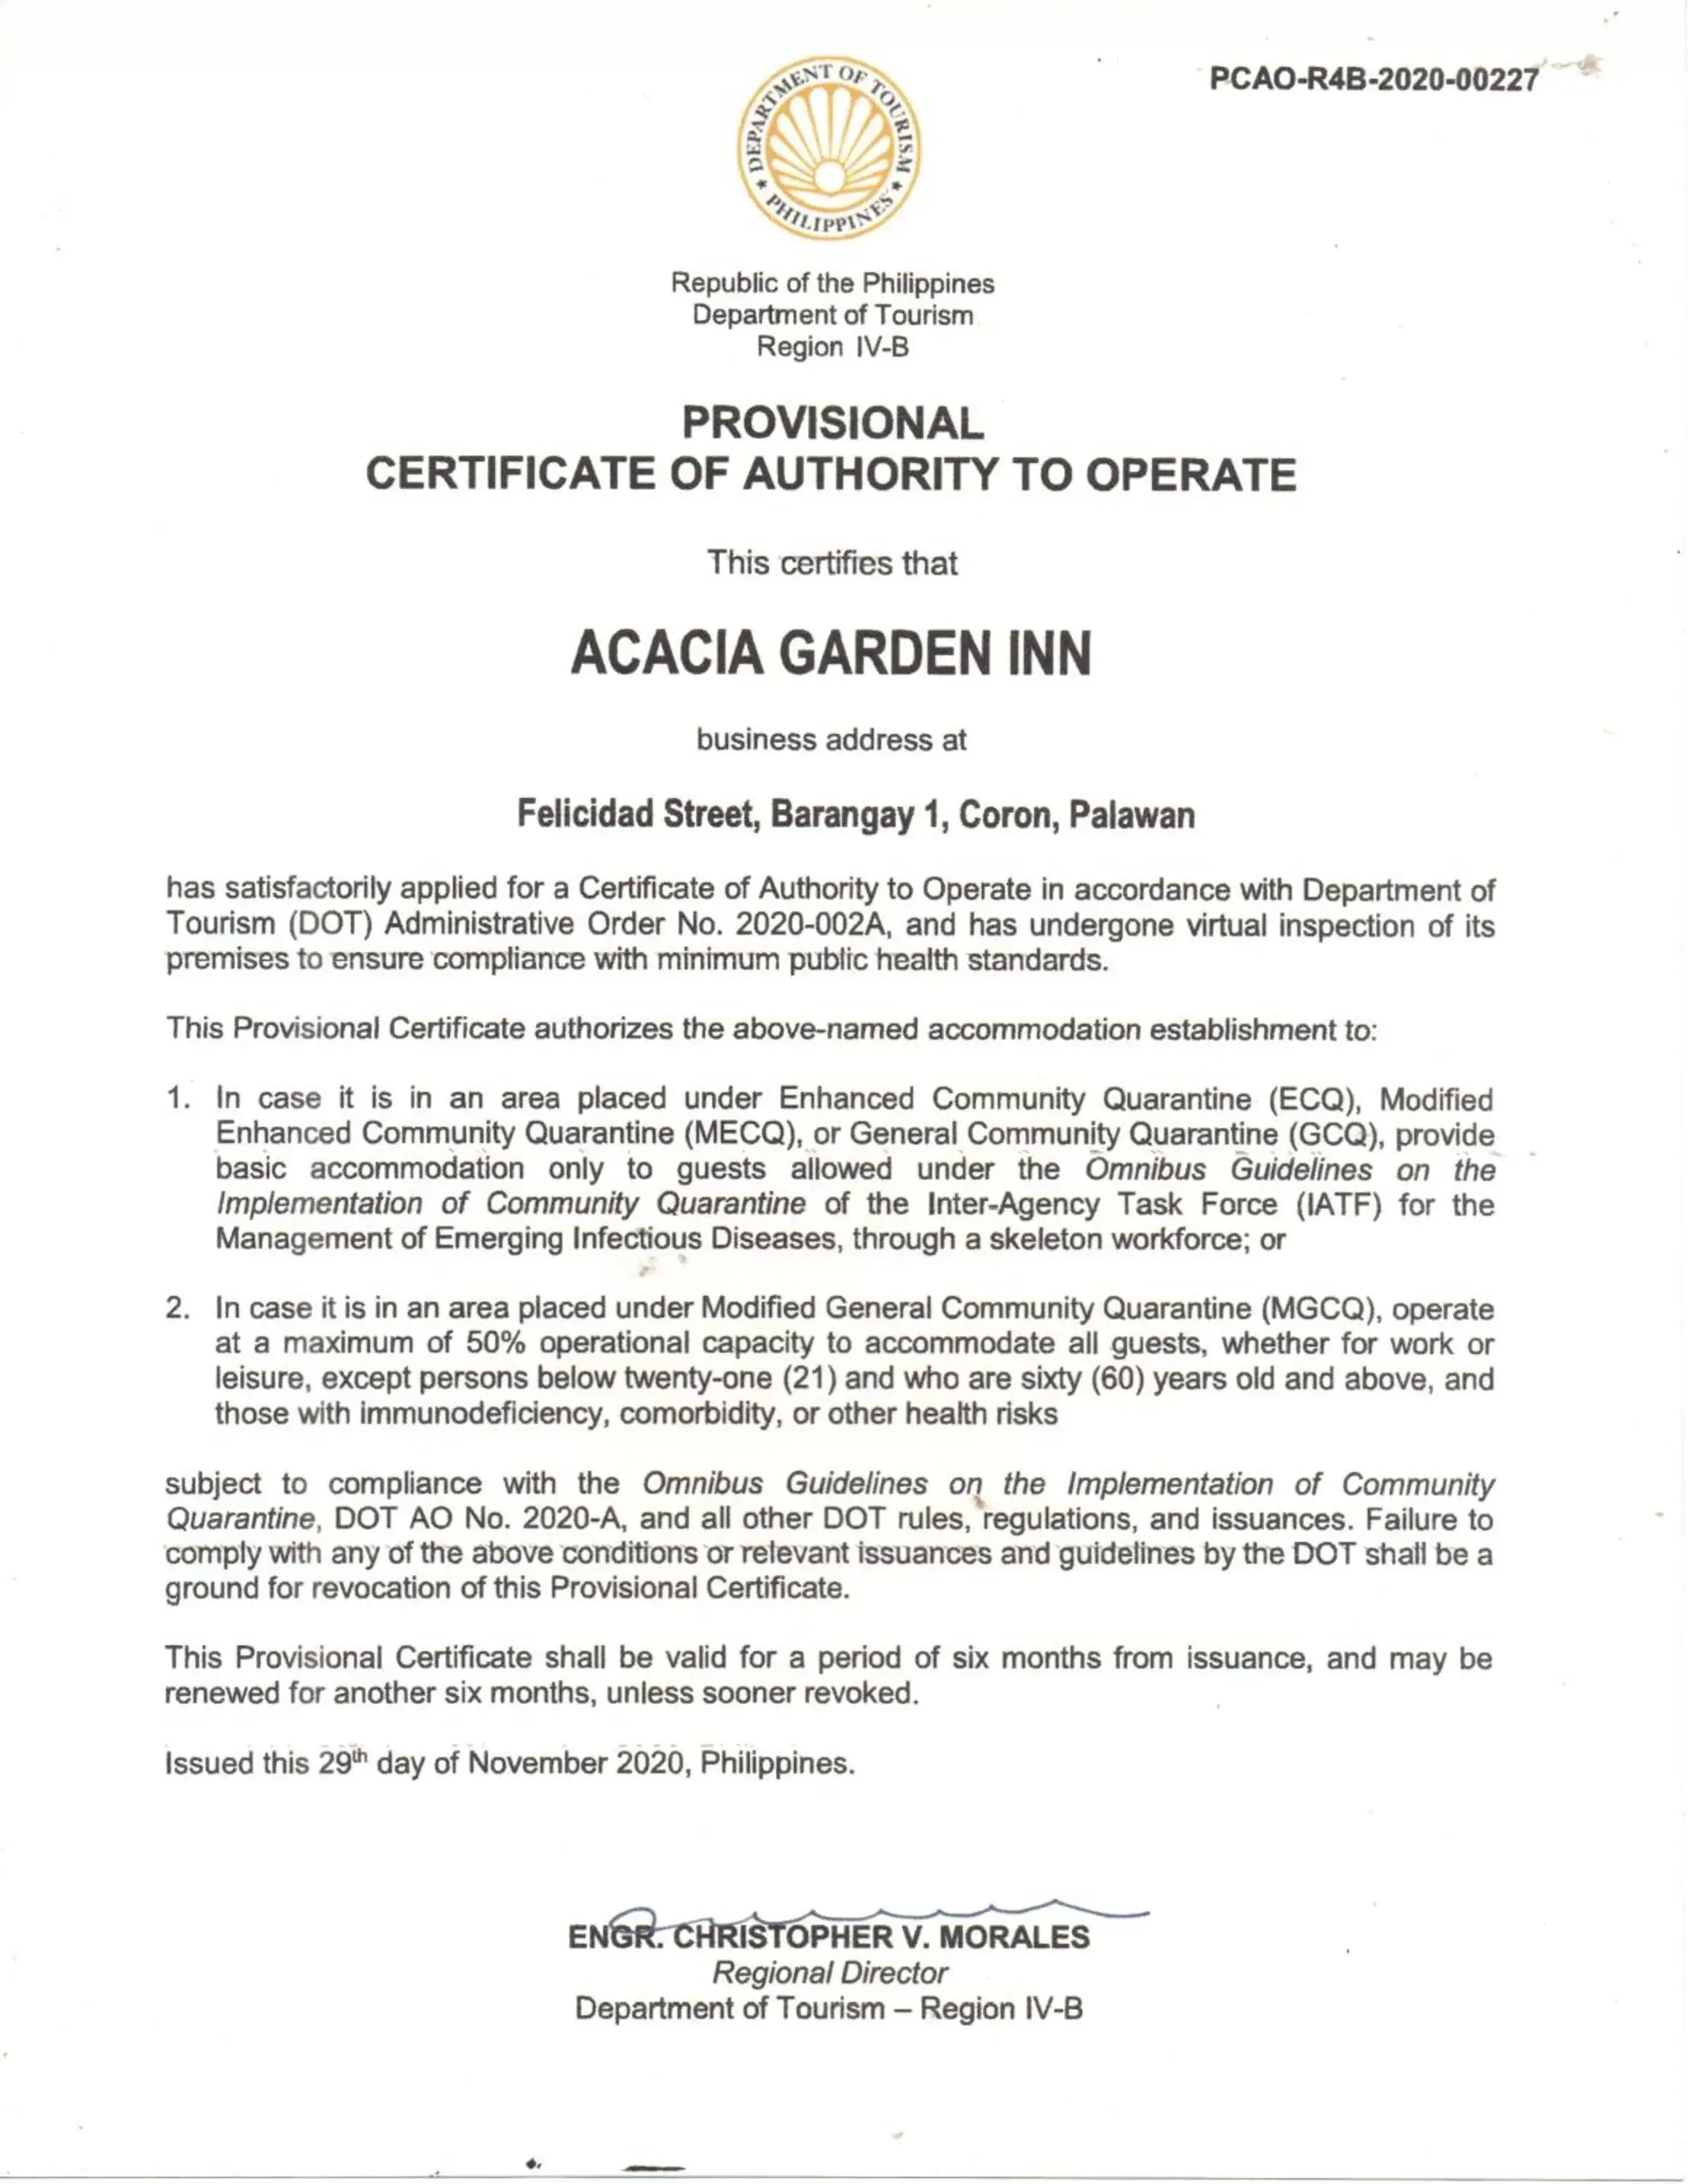 Logo/Certificate/Sign/Award in Acacia Garden Inn